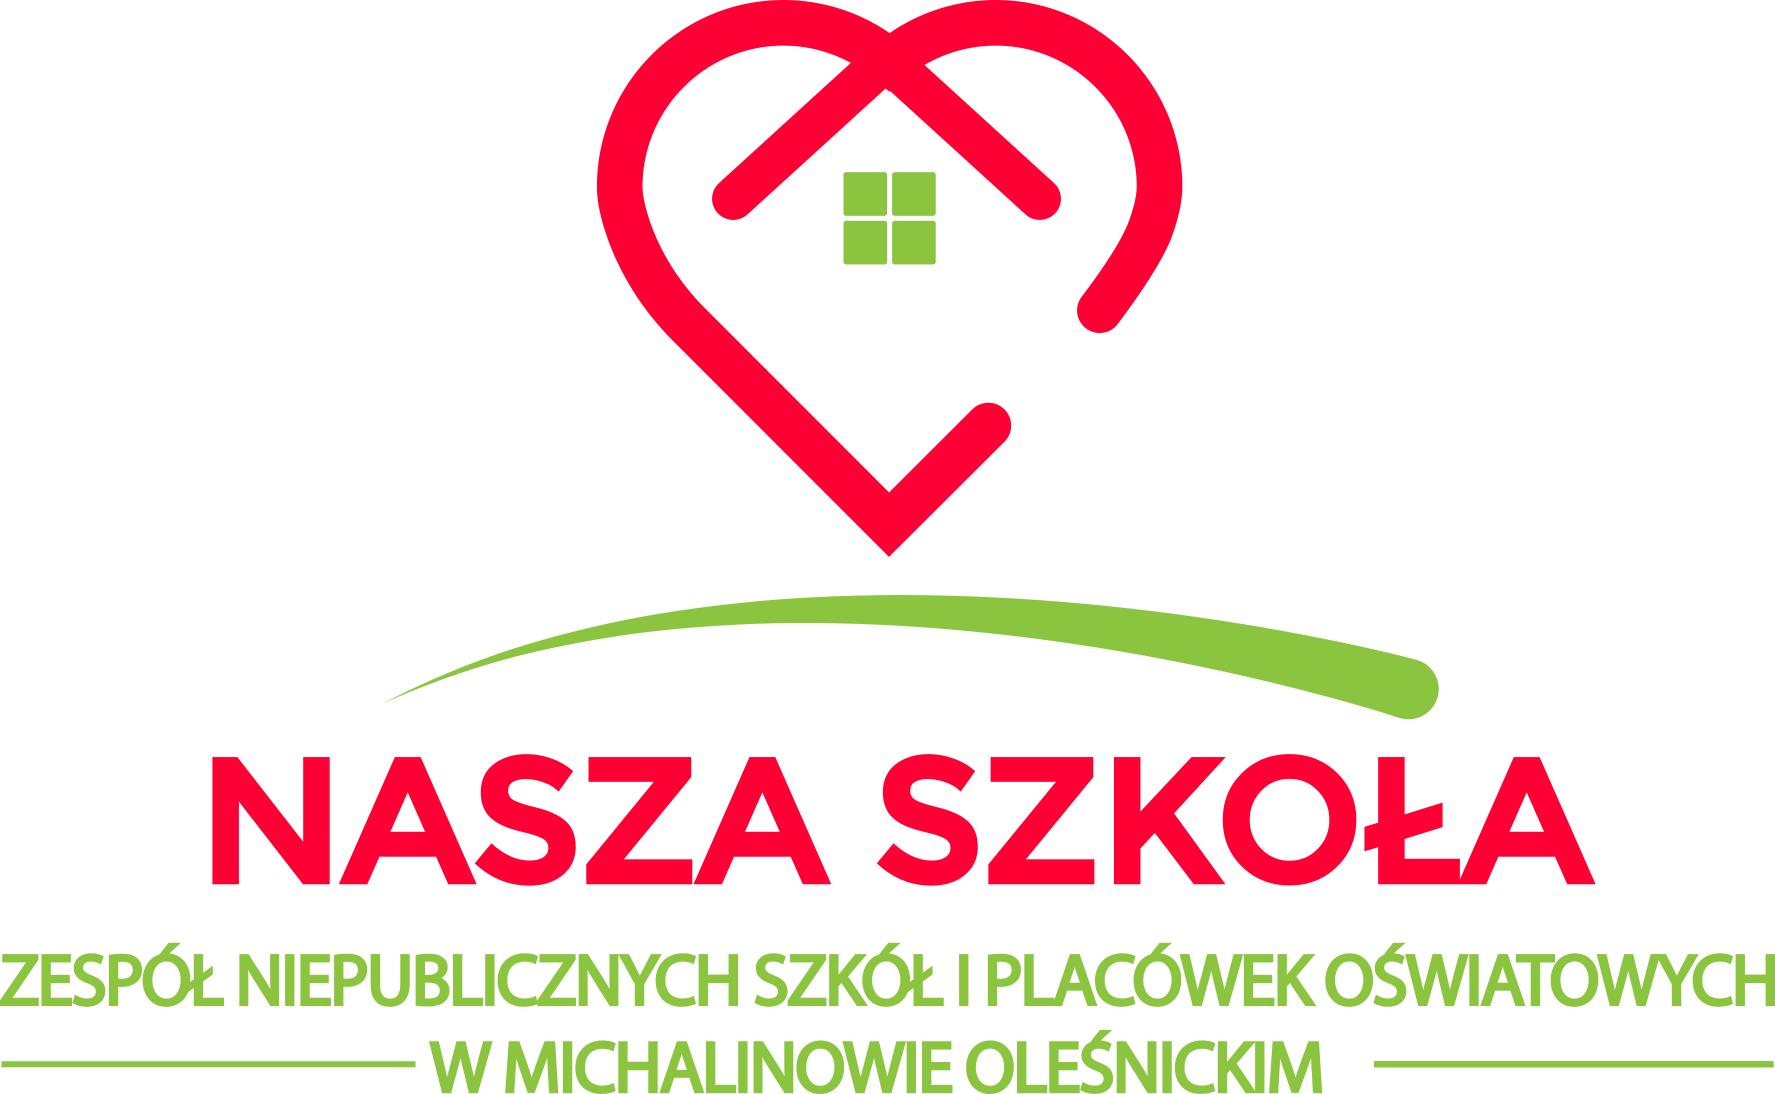 Zespół Niepublicznych Szkół i Placówek Oświatowych „ Nasza Szkoła” w Michalinowie Oleśnickim